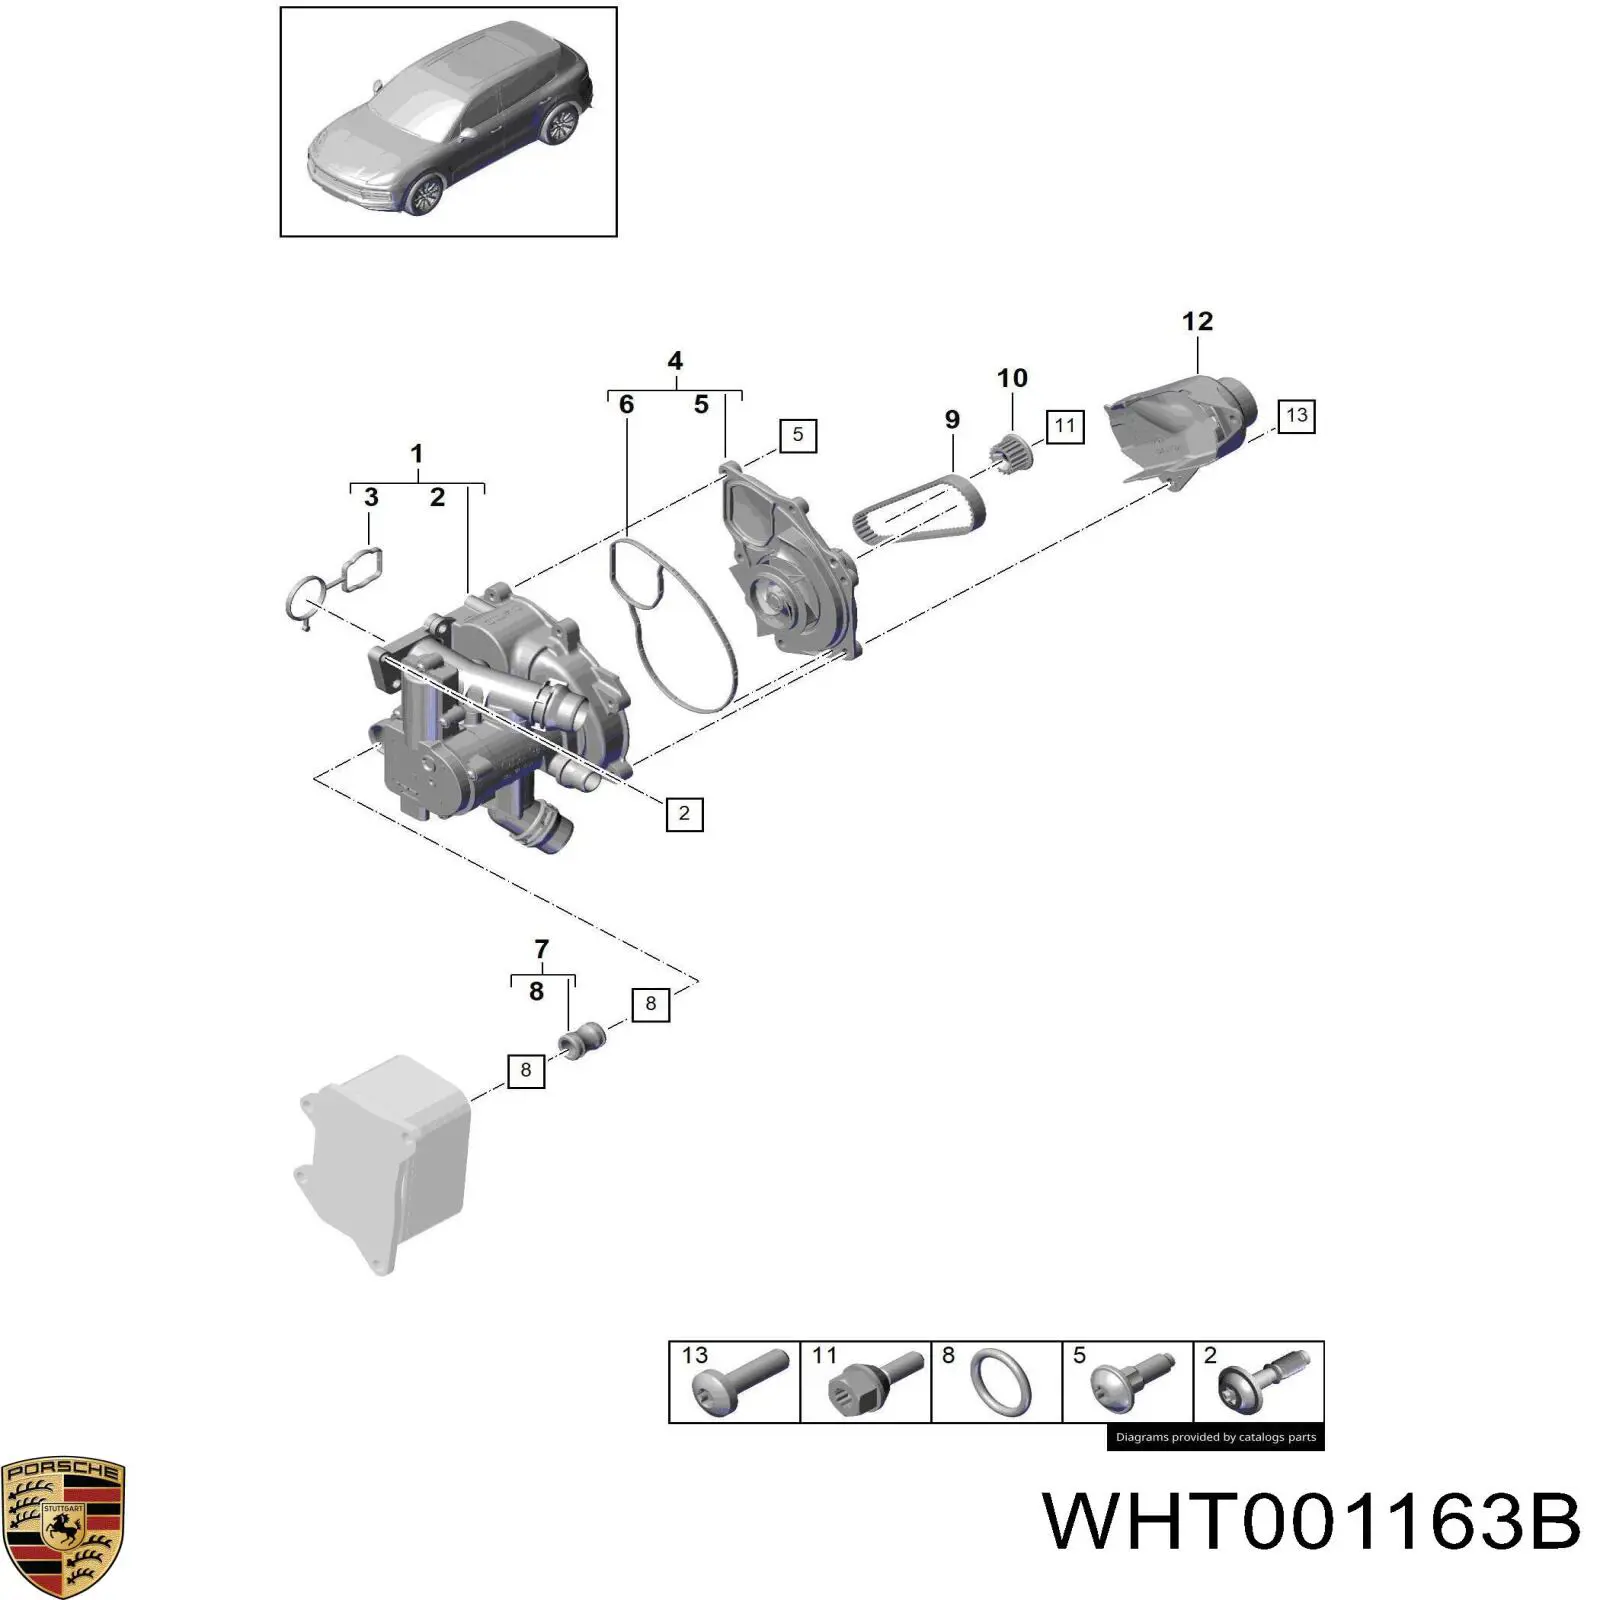 WHT001163B Porsche perno de la polea del cigüeñal